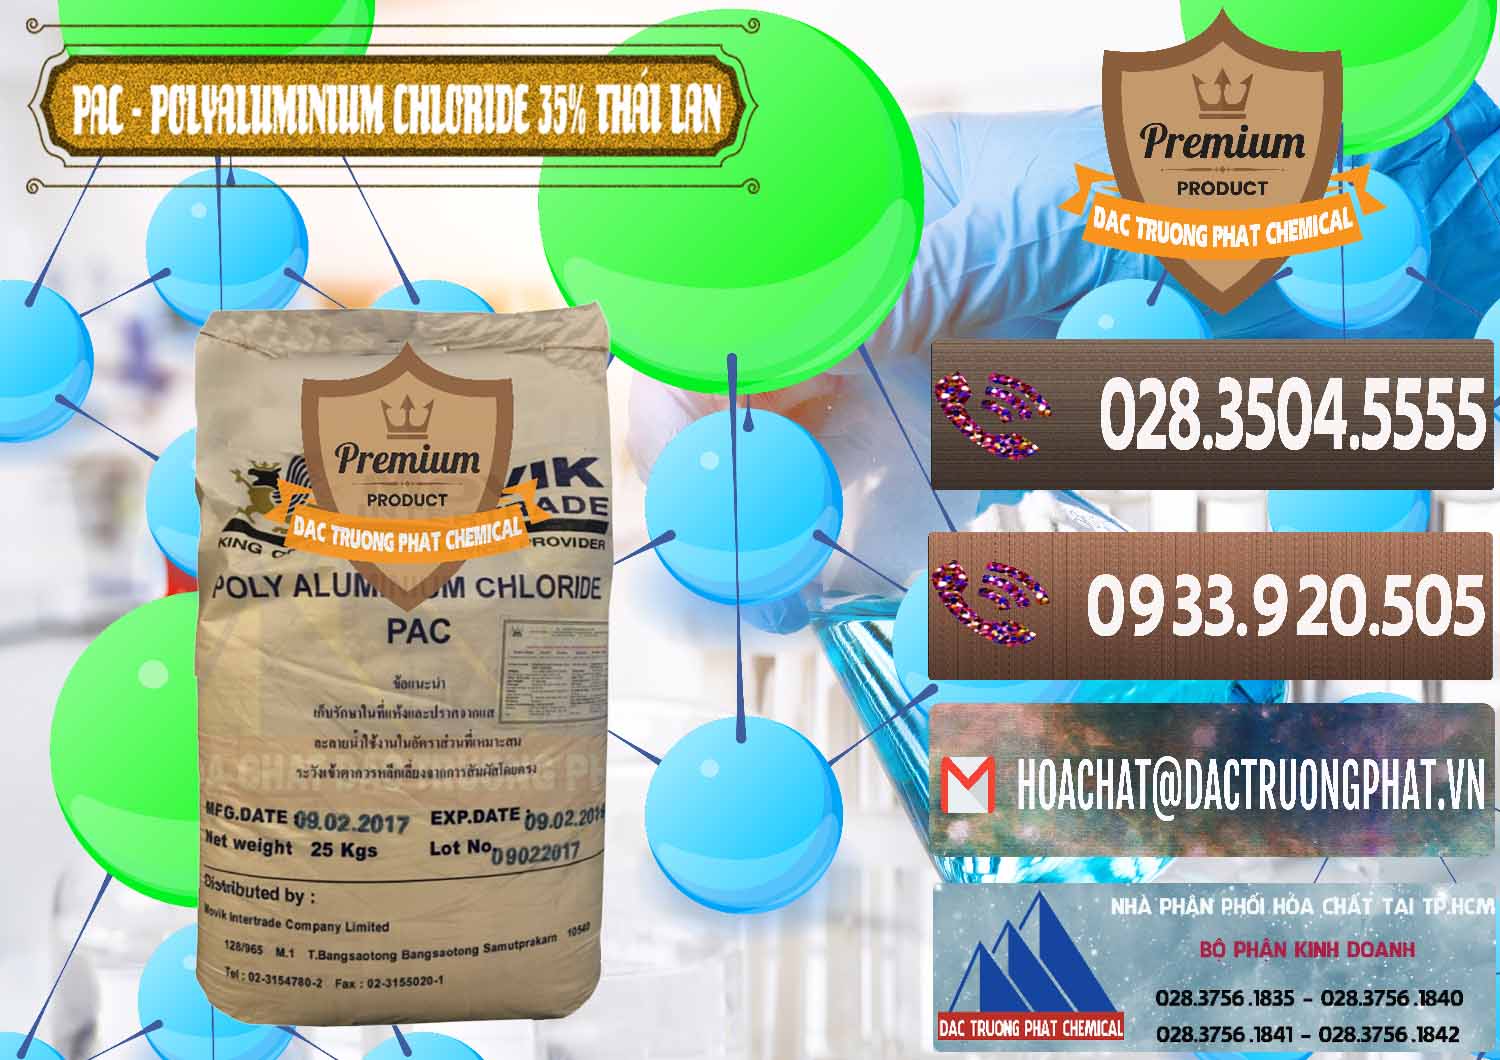 Bán & cung cấp PAC - Polyaluminium Chloride 35% Thái Lan Thailand - 0470 - Cty chuyên kinh doanh - cung cấp hóa chất tại TP.HCM - hoachatviet.net